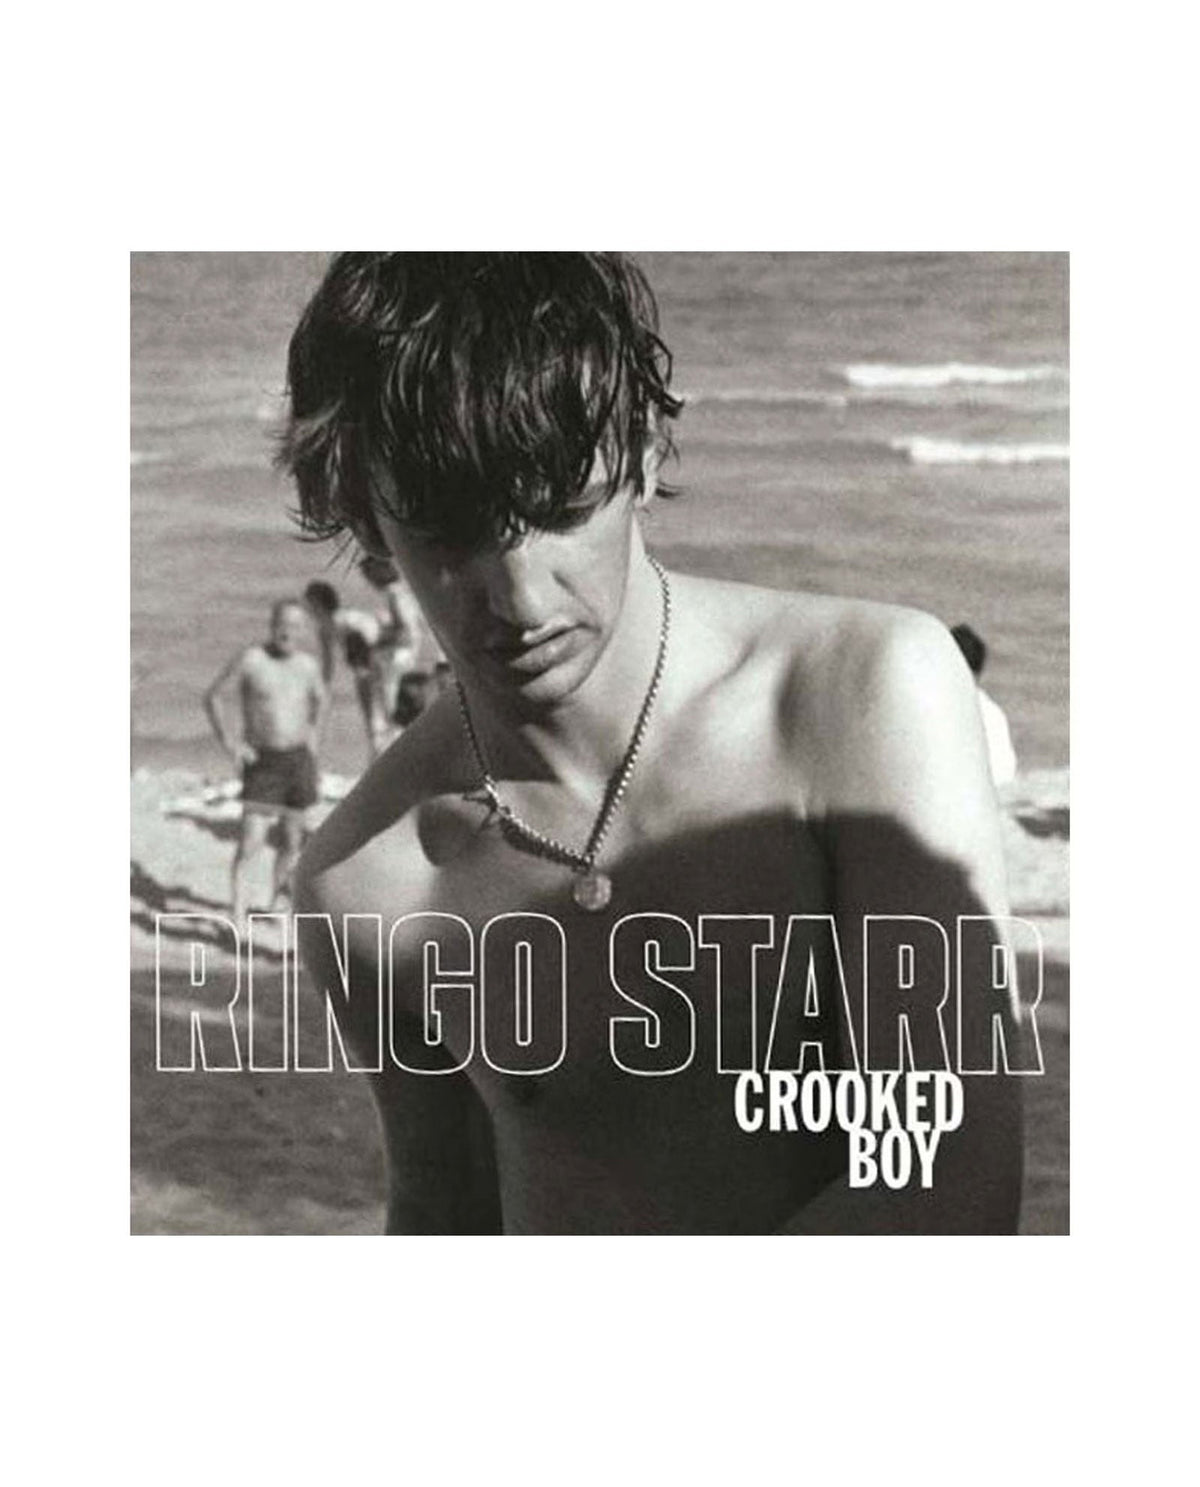 Ringo Starr - LP Vinilo 10" "Crooked Boy" - D2fy · Rocktud - Rocktud